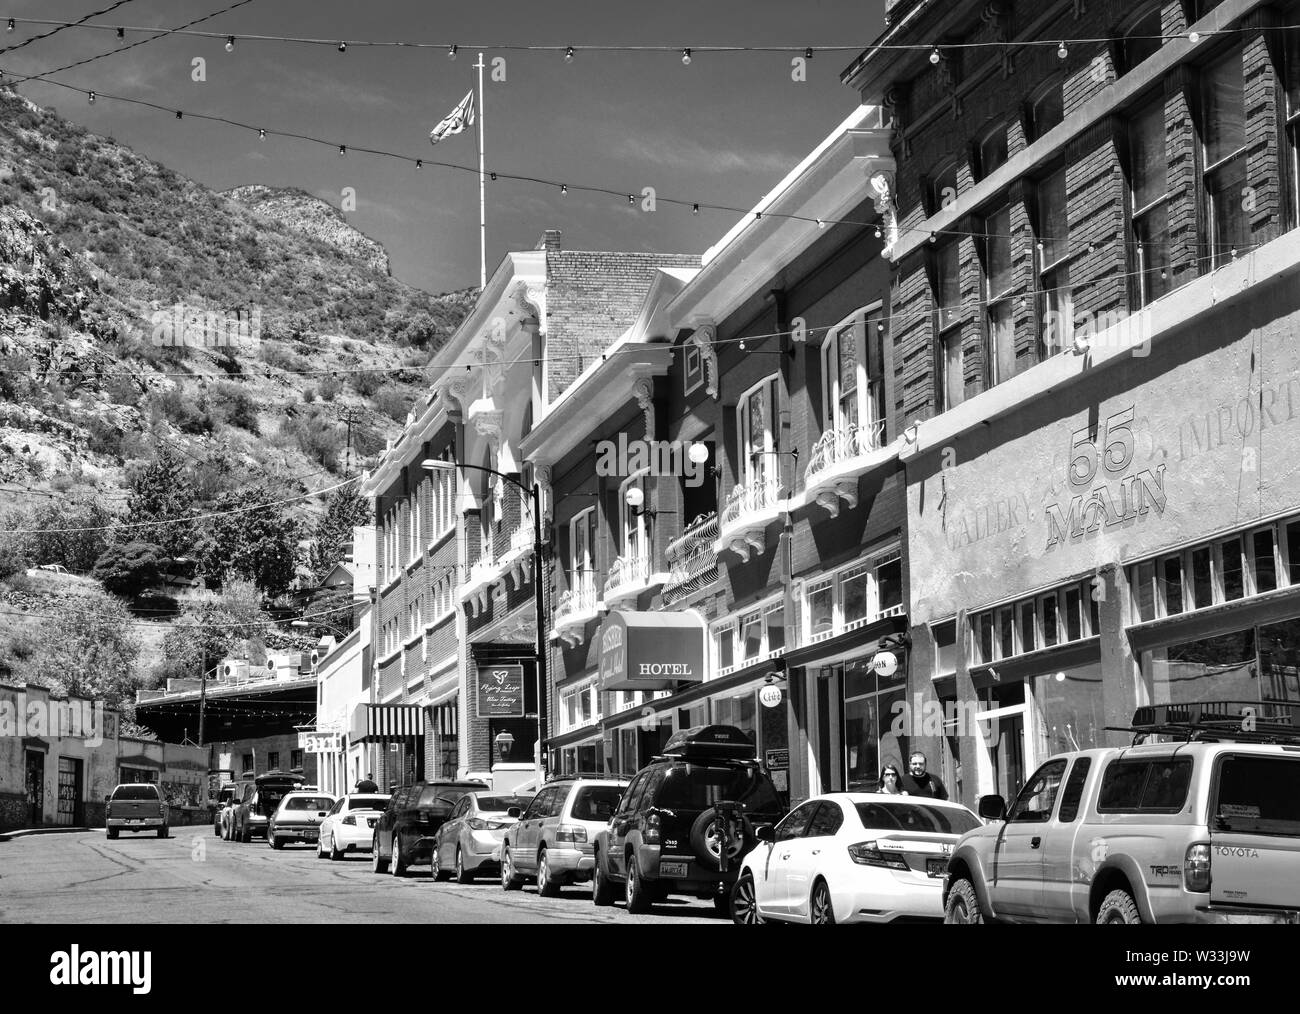 Bisbee, AZ sulla via principale, foderato con negozi di antiquariato, negozi e alberghi, è un eccentrico piccola città America gem in bianco e nero Foto Stock